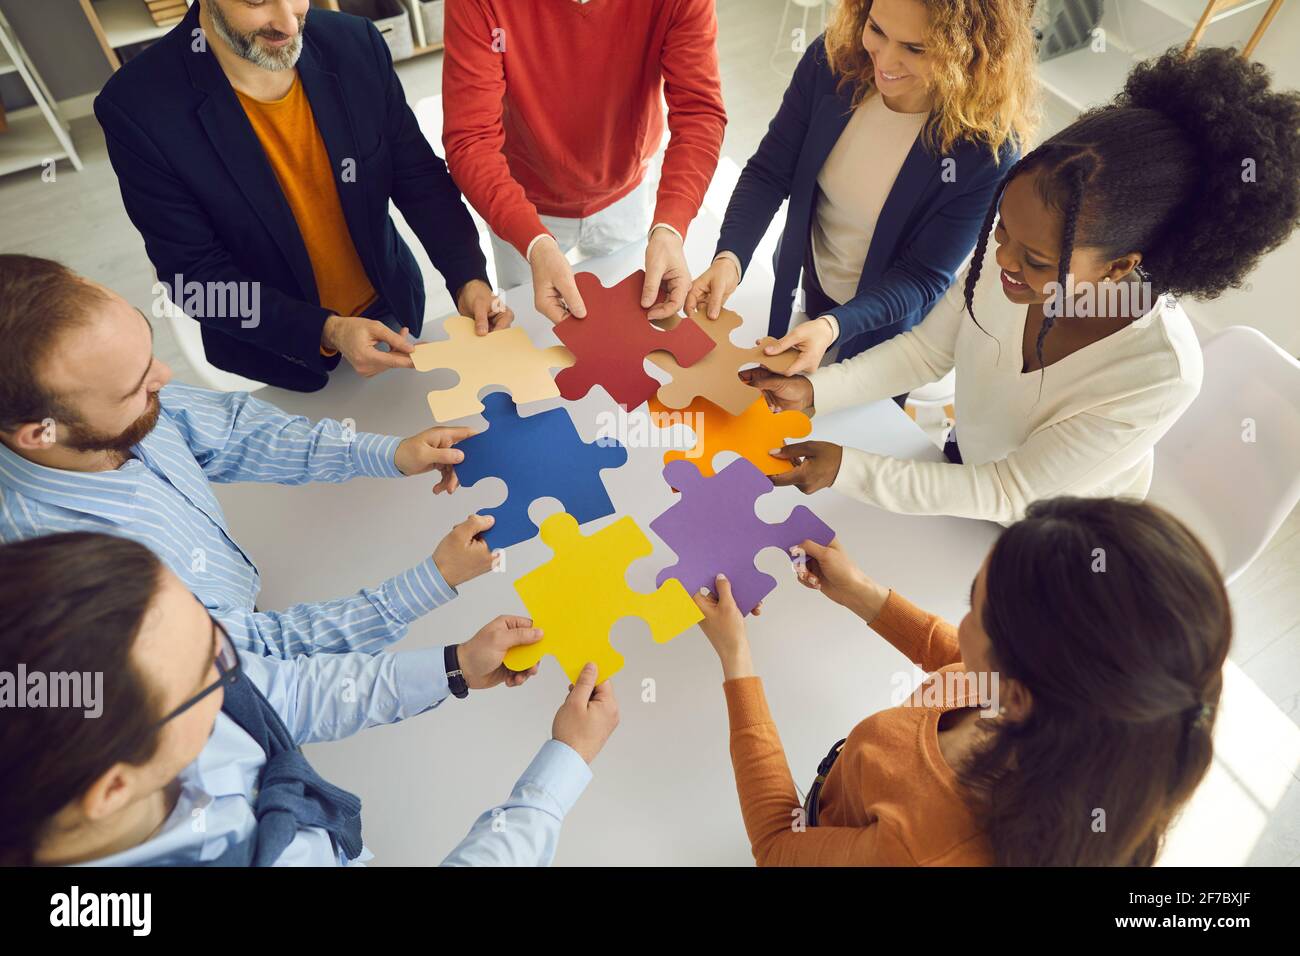 L'équipe commerciale qui relie les pièces de puzzle en tant que métaphore pour le travail d'équipe, la coopération et la recherche de solutions Banque D'Images